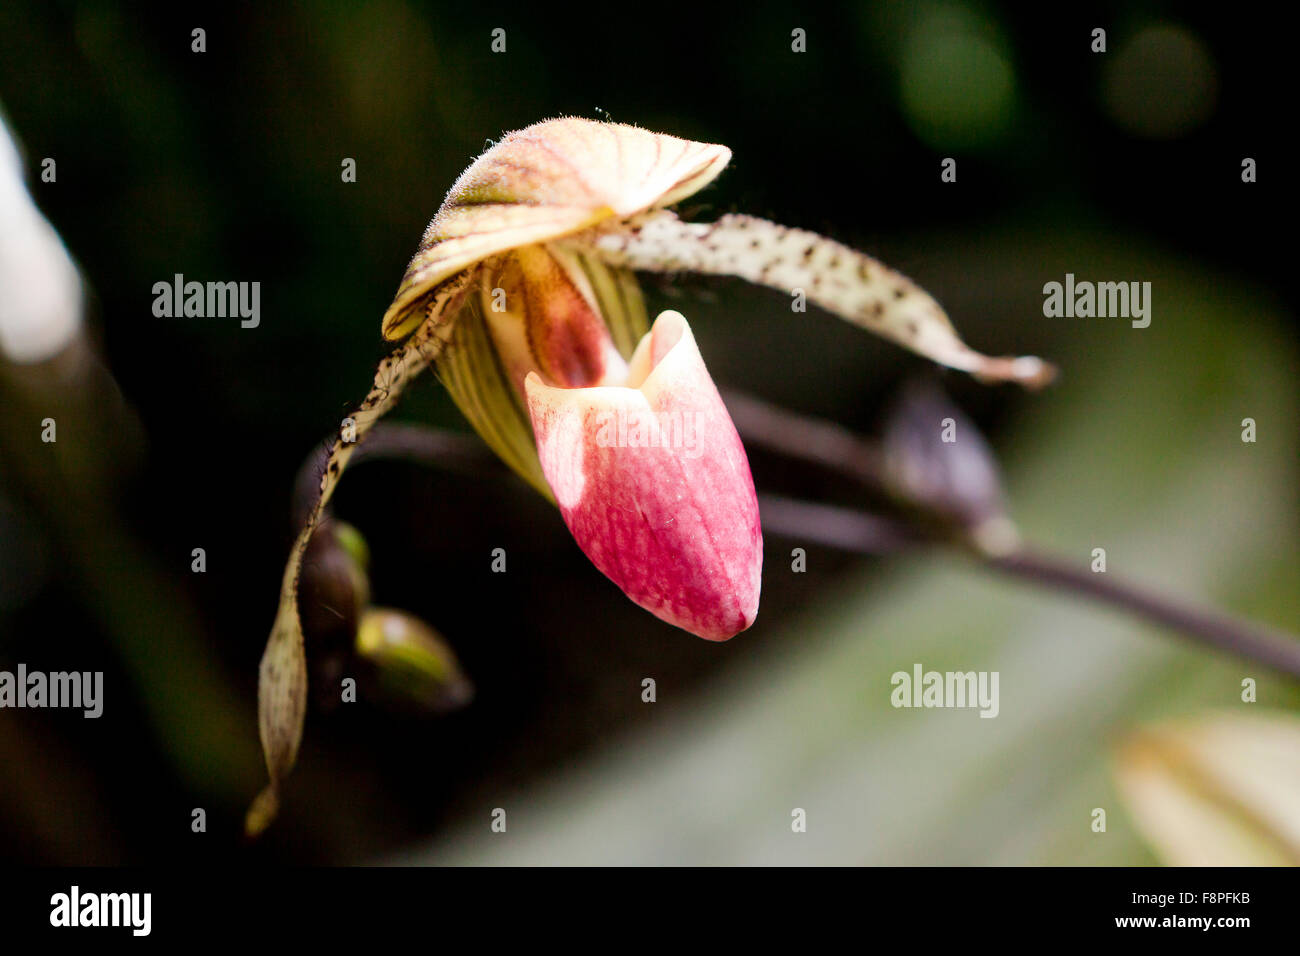 Venus slipper orchid flower (Paphiopedilum) Stock Photo